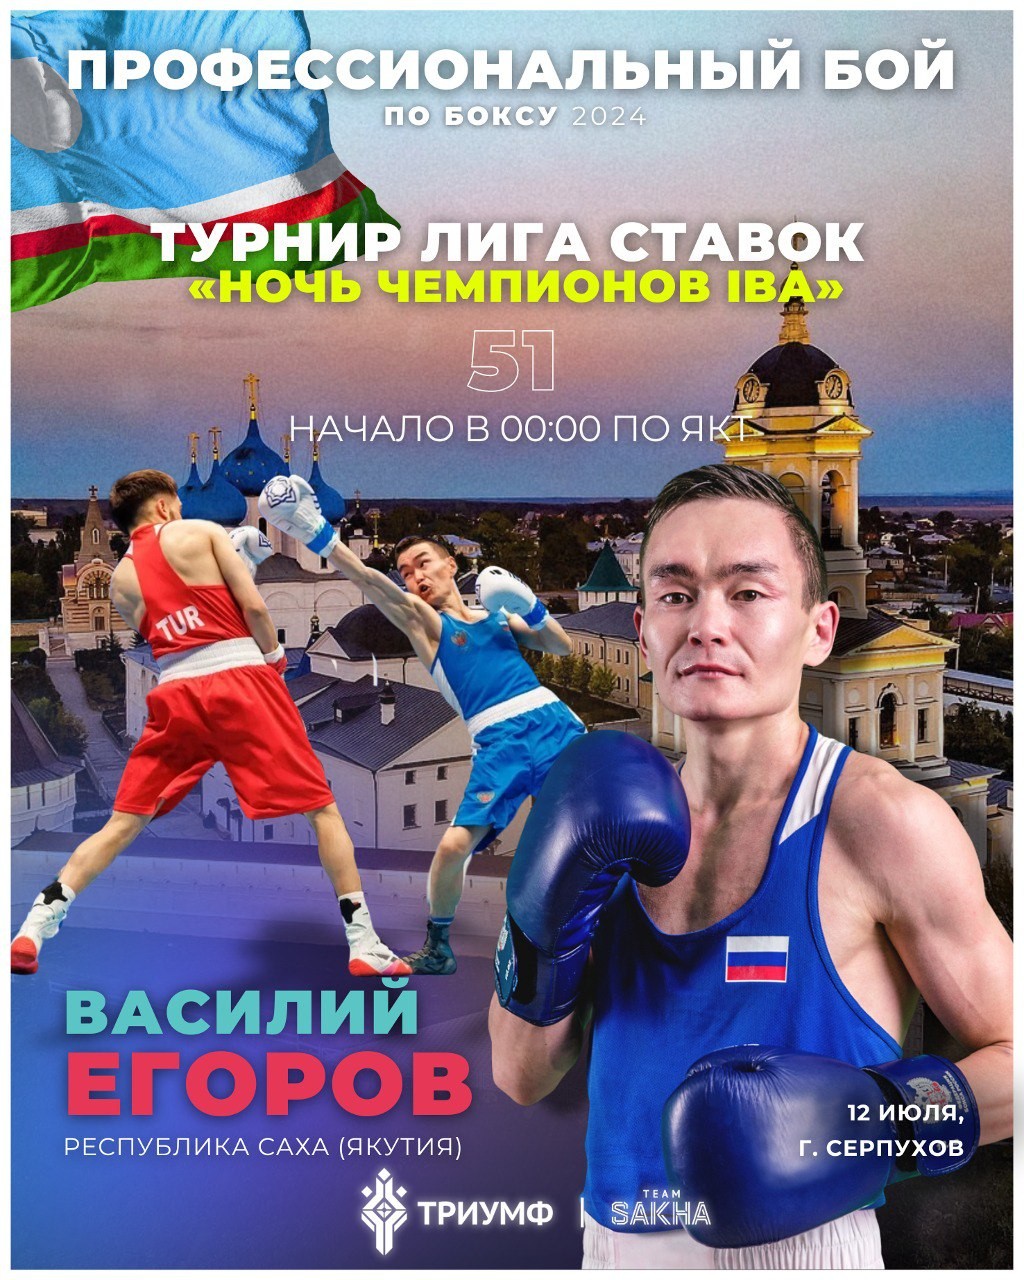 Боксер из Якутии Василий Егоров проведёт профессиональный бой